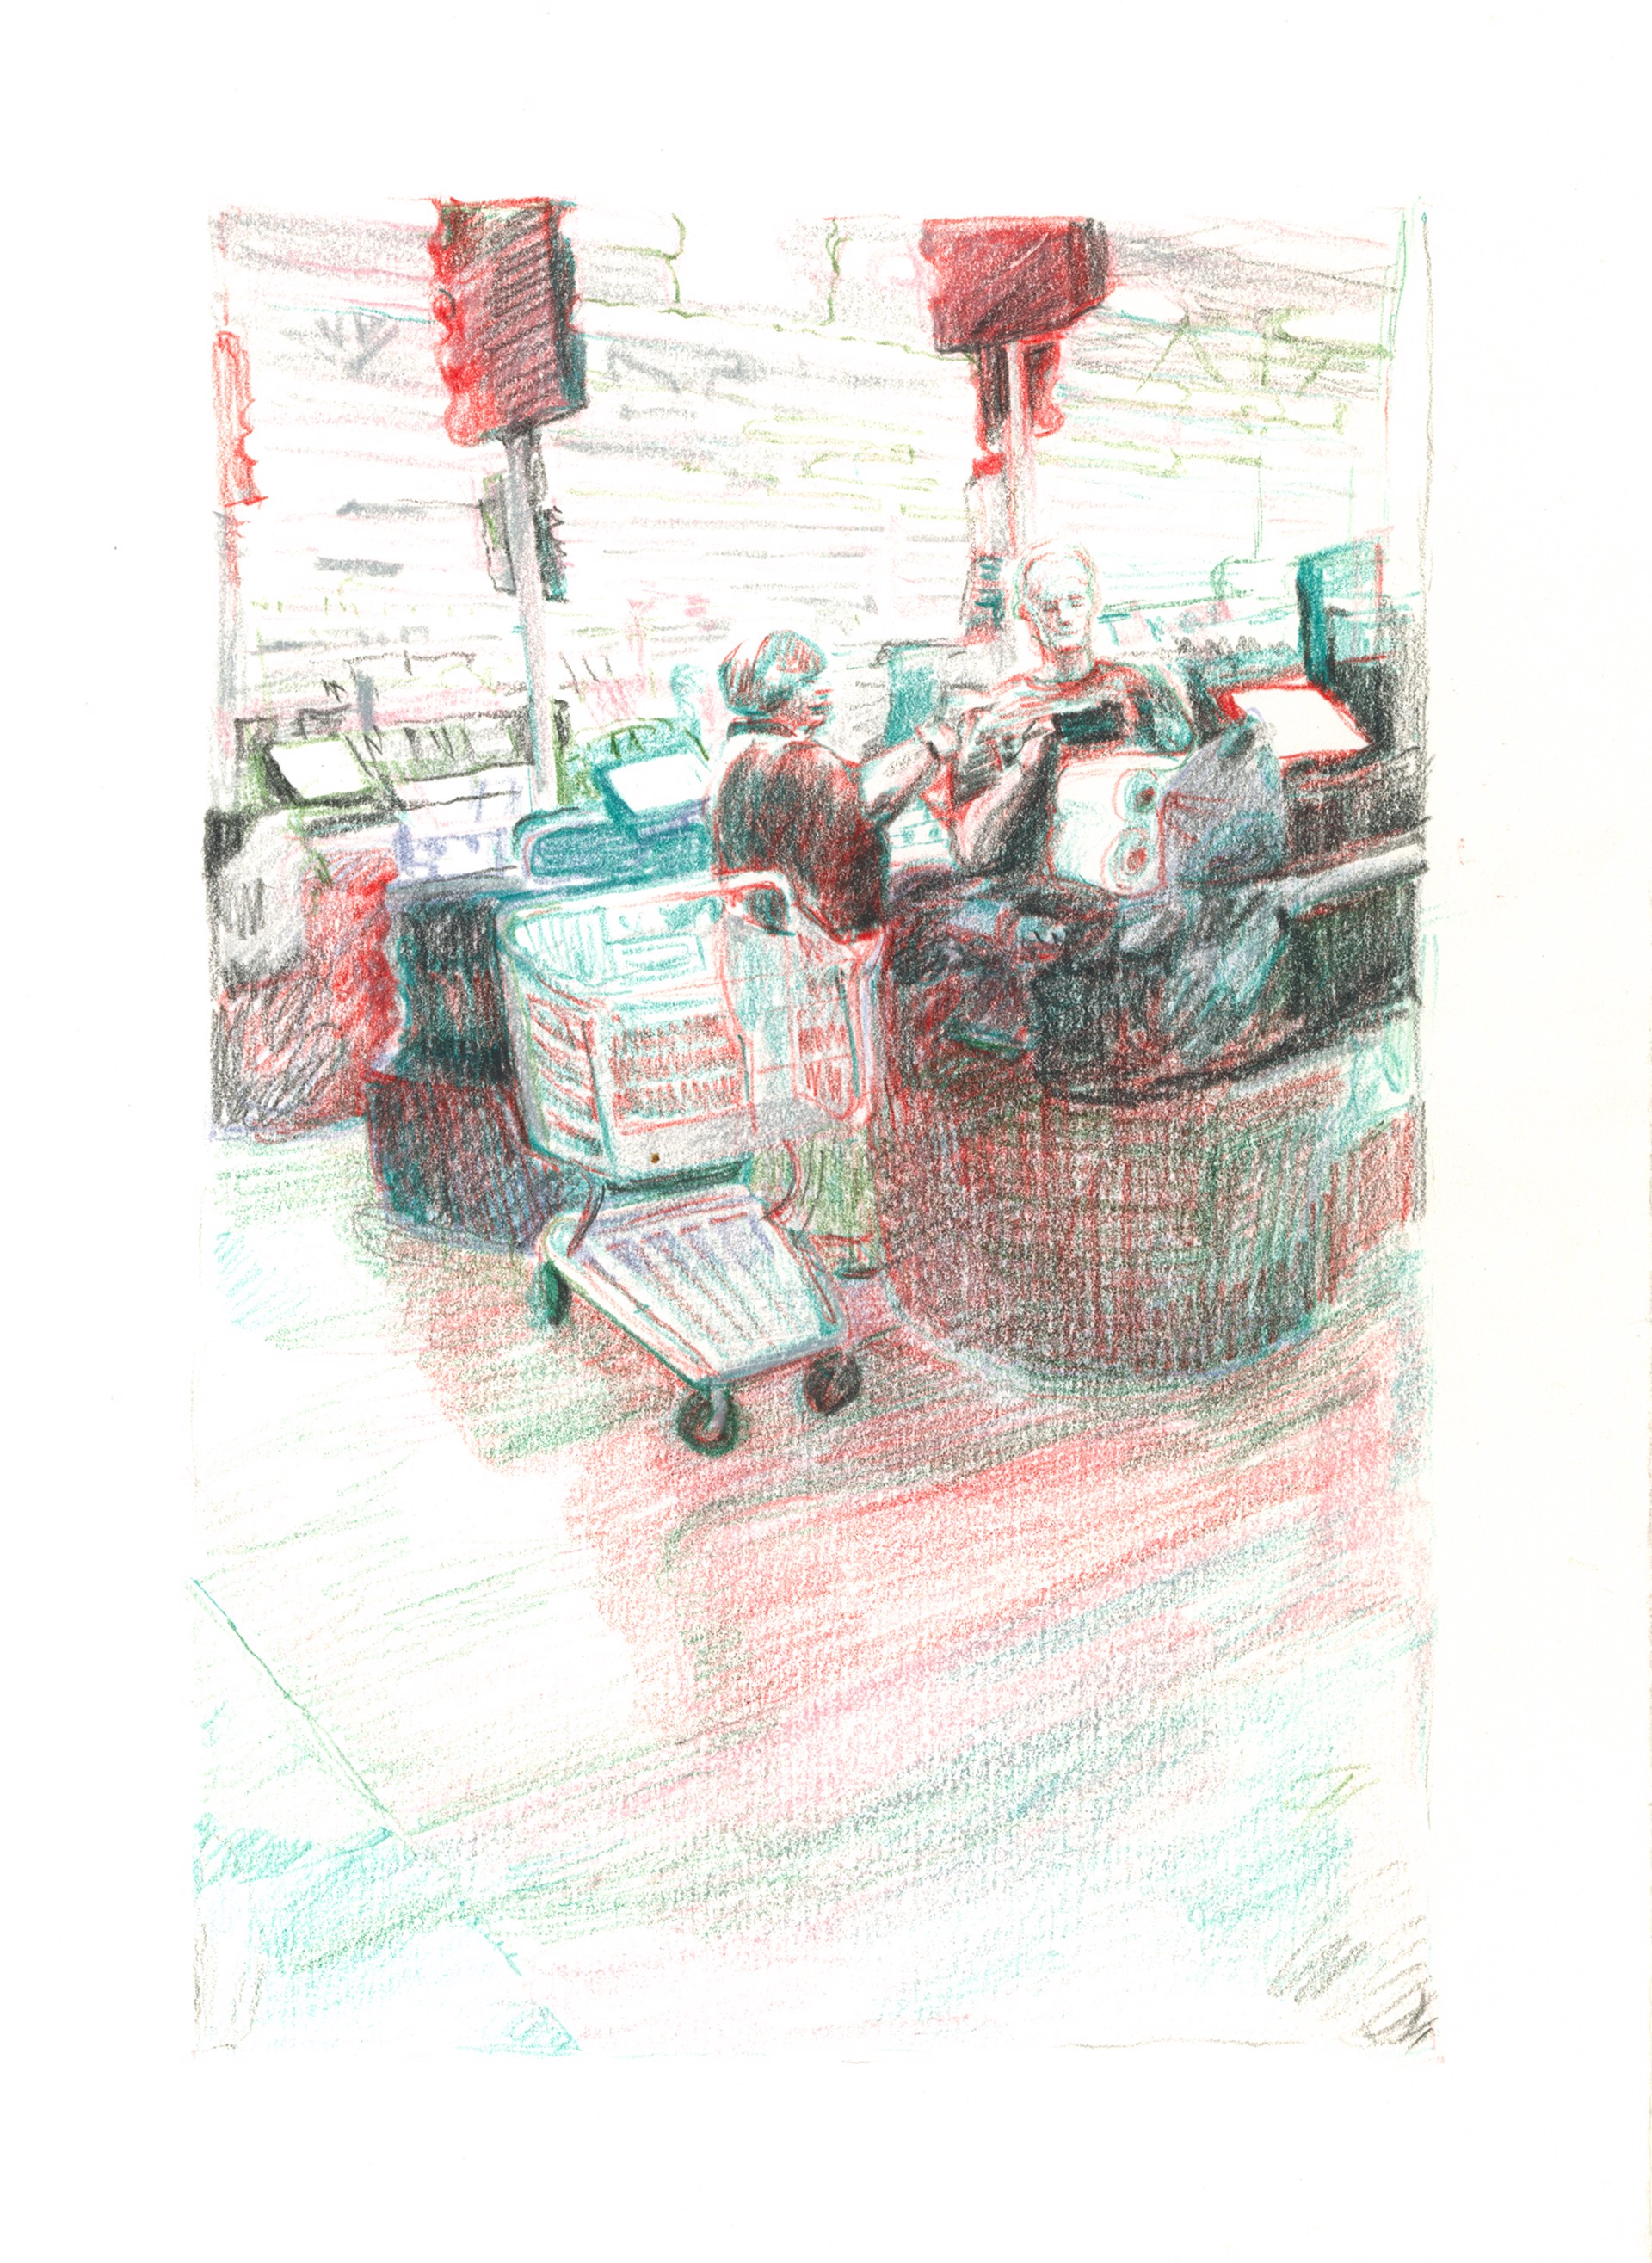 Marketplace/Cashier #1 by Eilis Crean